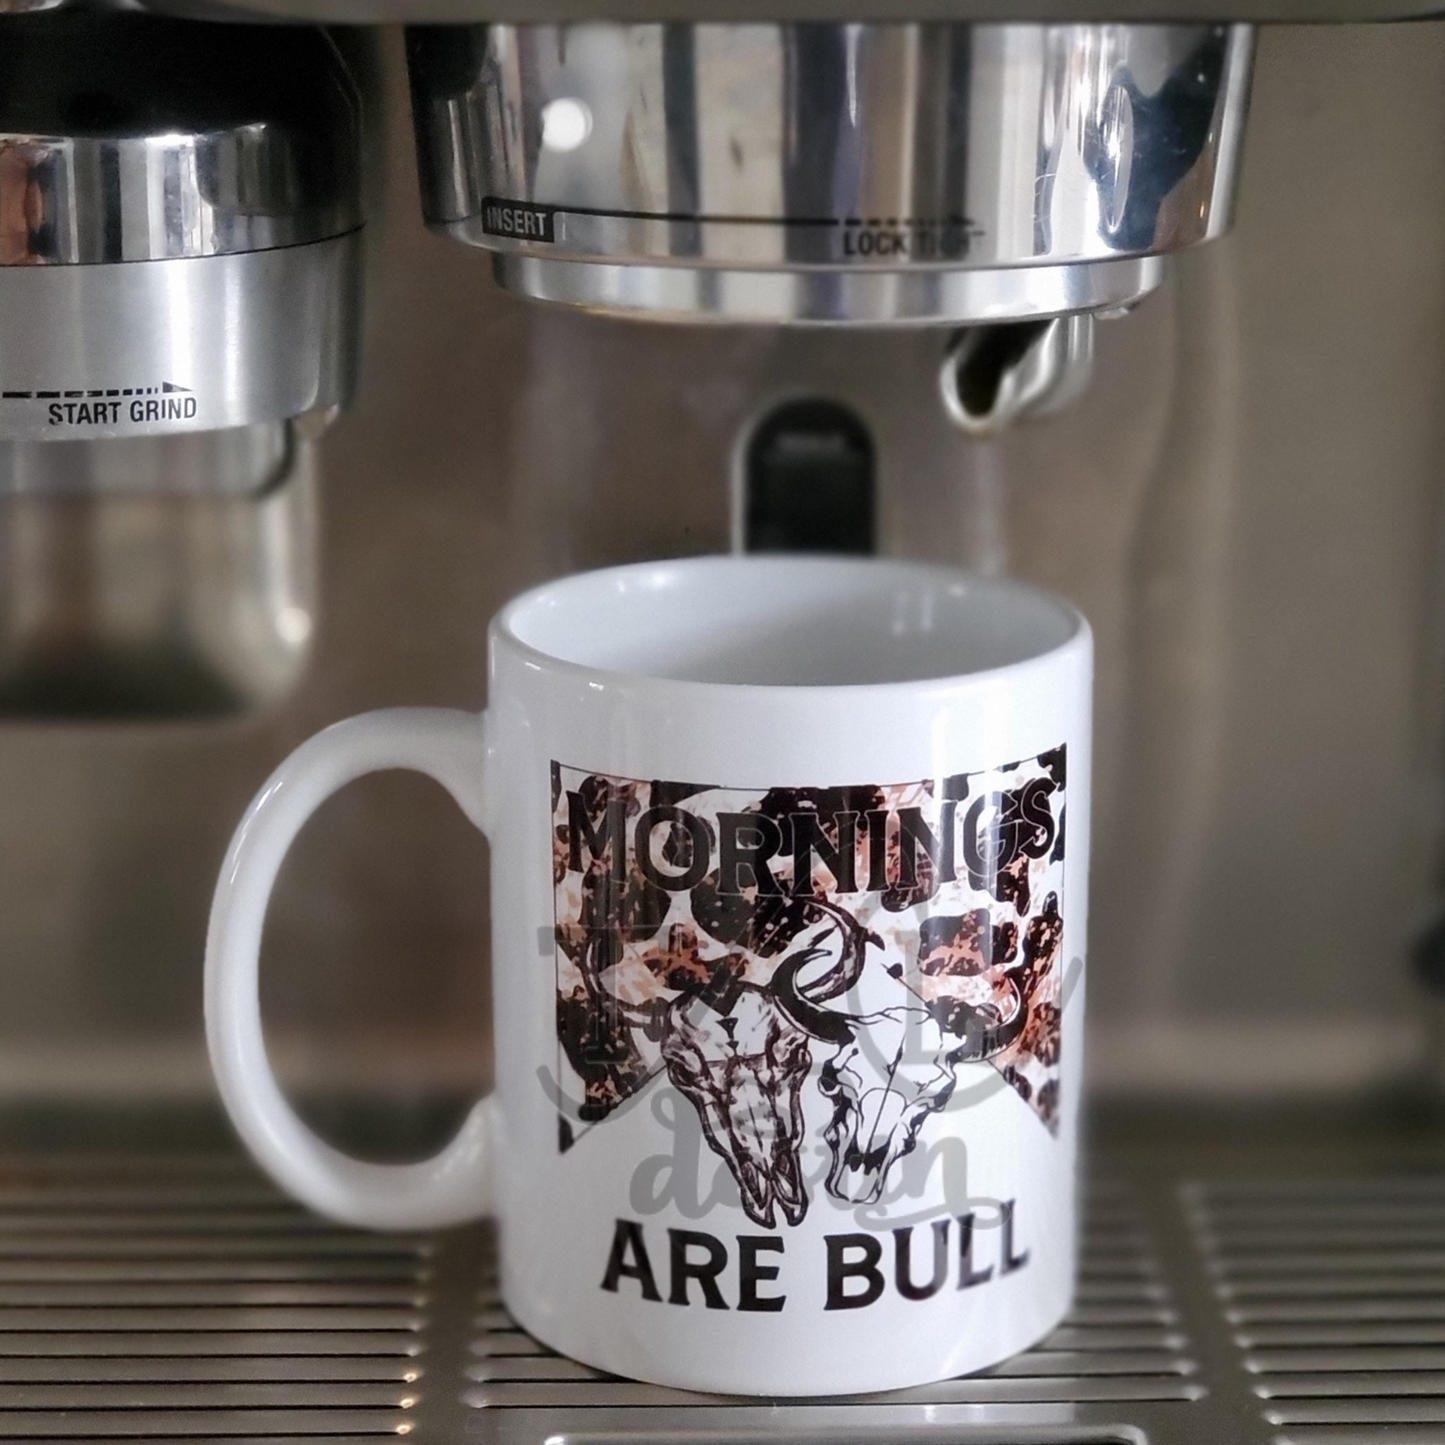 Mornings are bull mug